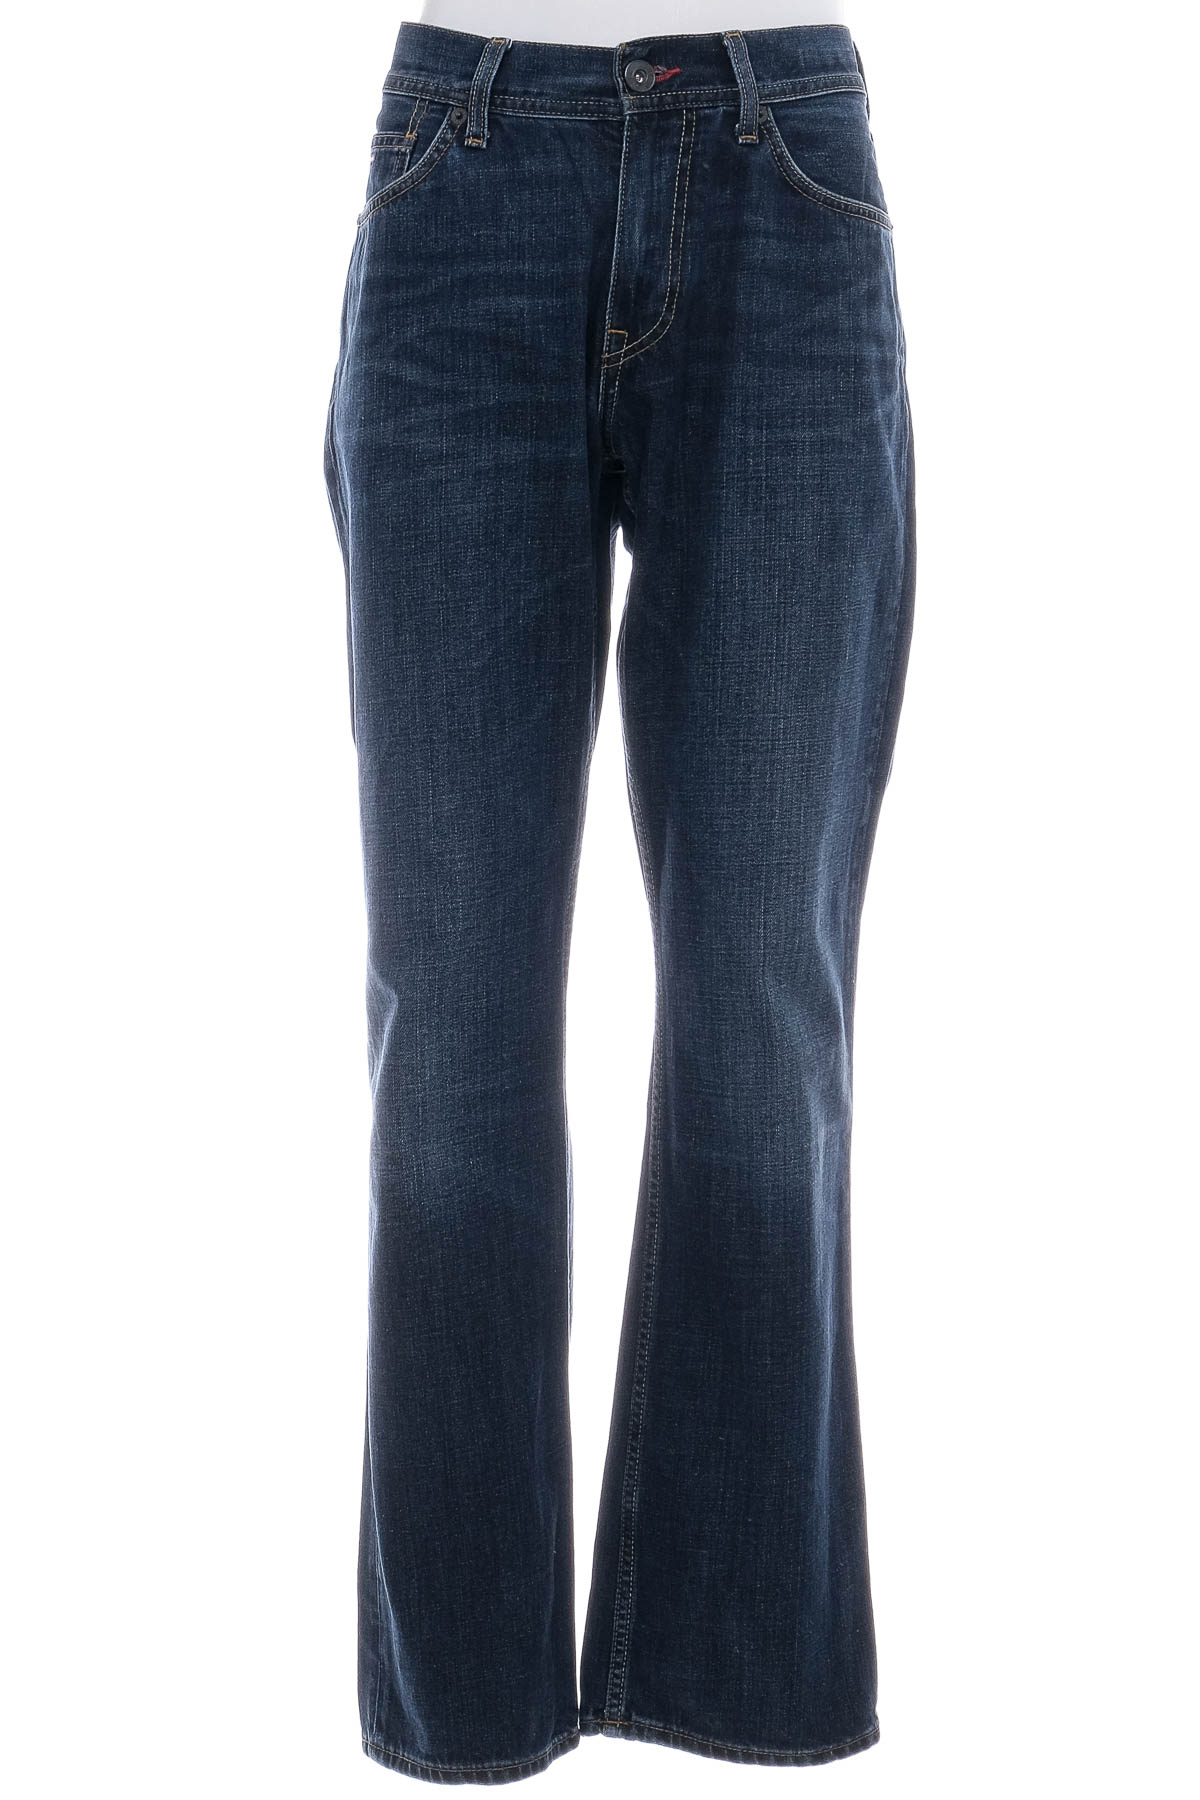 Men's jeans - TOMMY HILFIGER - 0